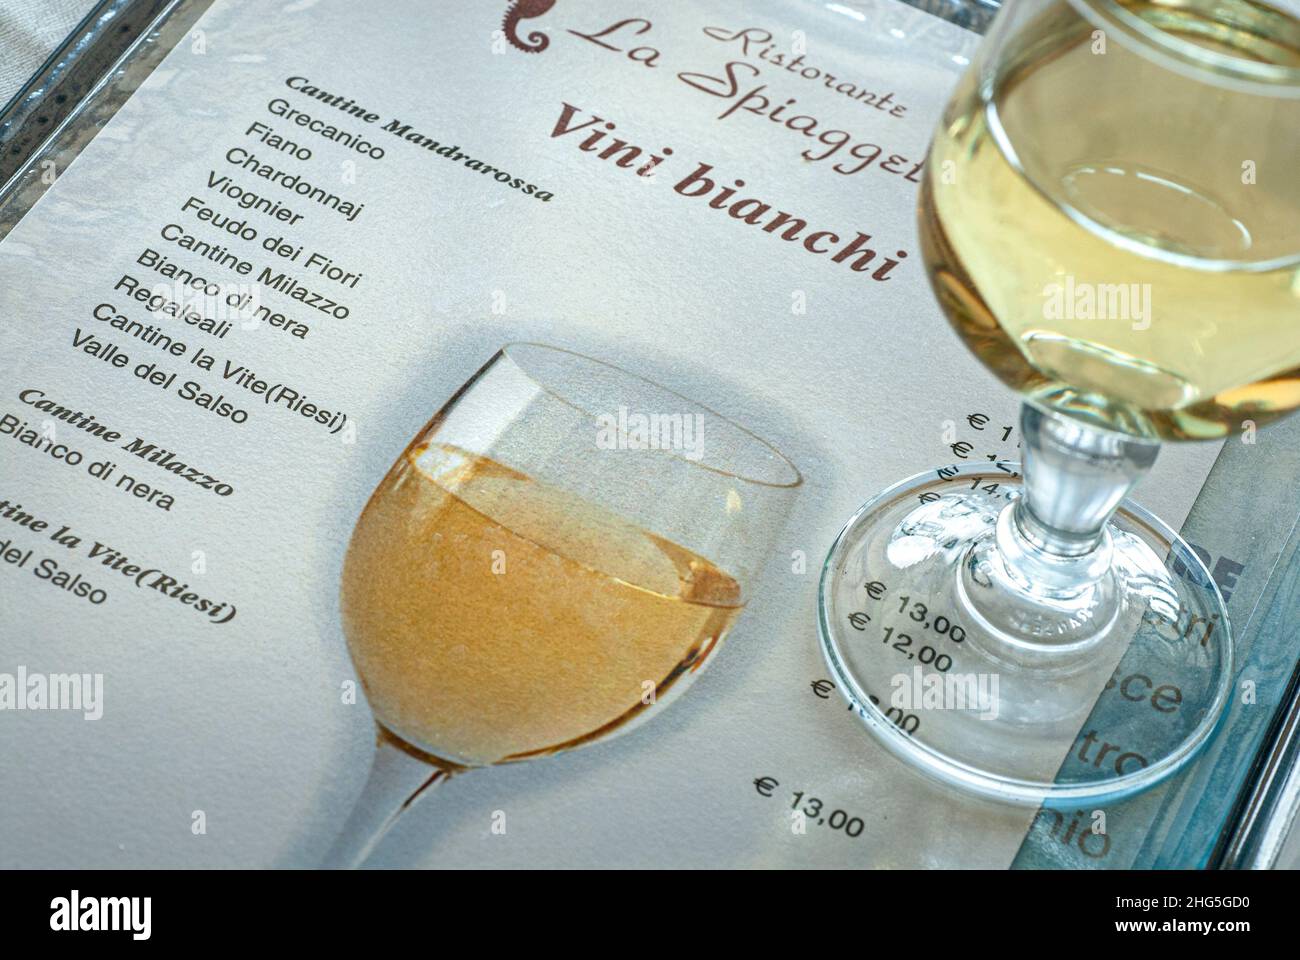 CARTA DEI VINI SICILIA bicchiere di vino bianco siciliano sulla carta dei vini Prezzi in euro al Ristorante la Spiaggetta Sicilia con vini tipici siciliani italiani Foto Stock